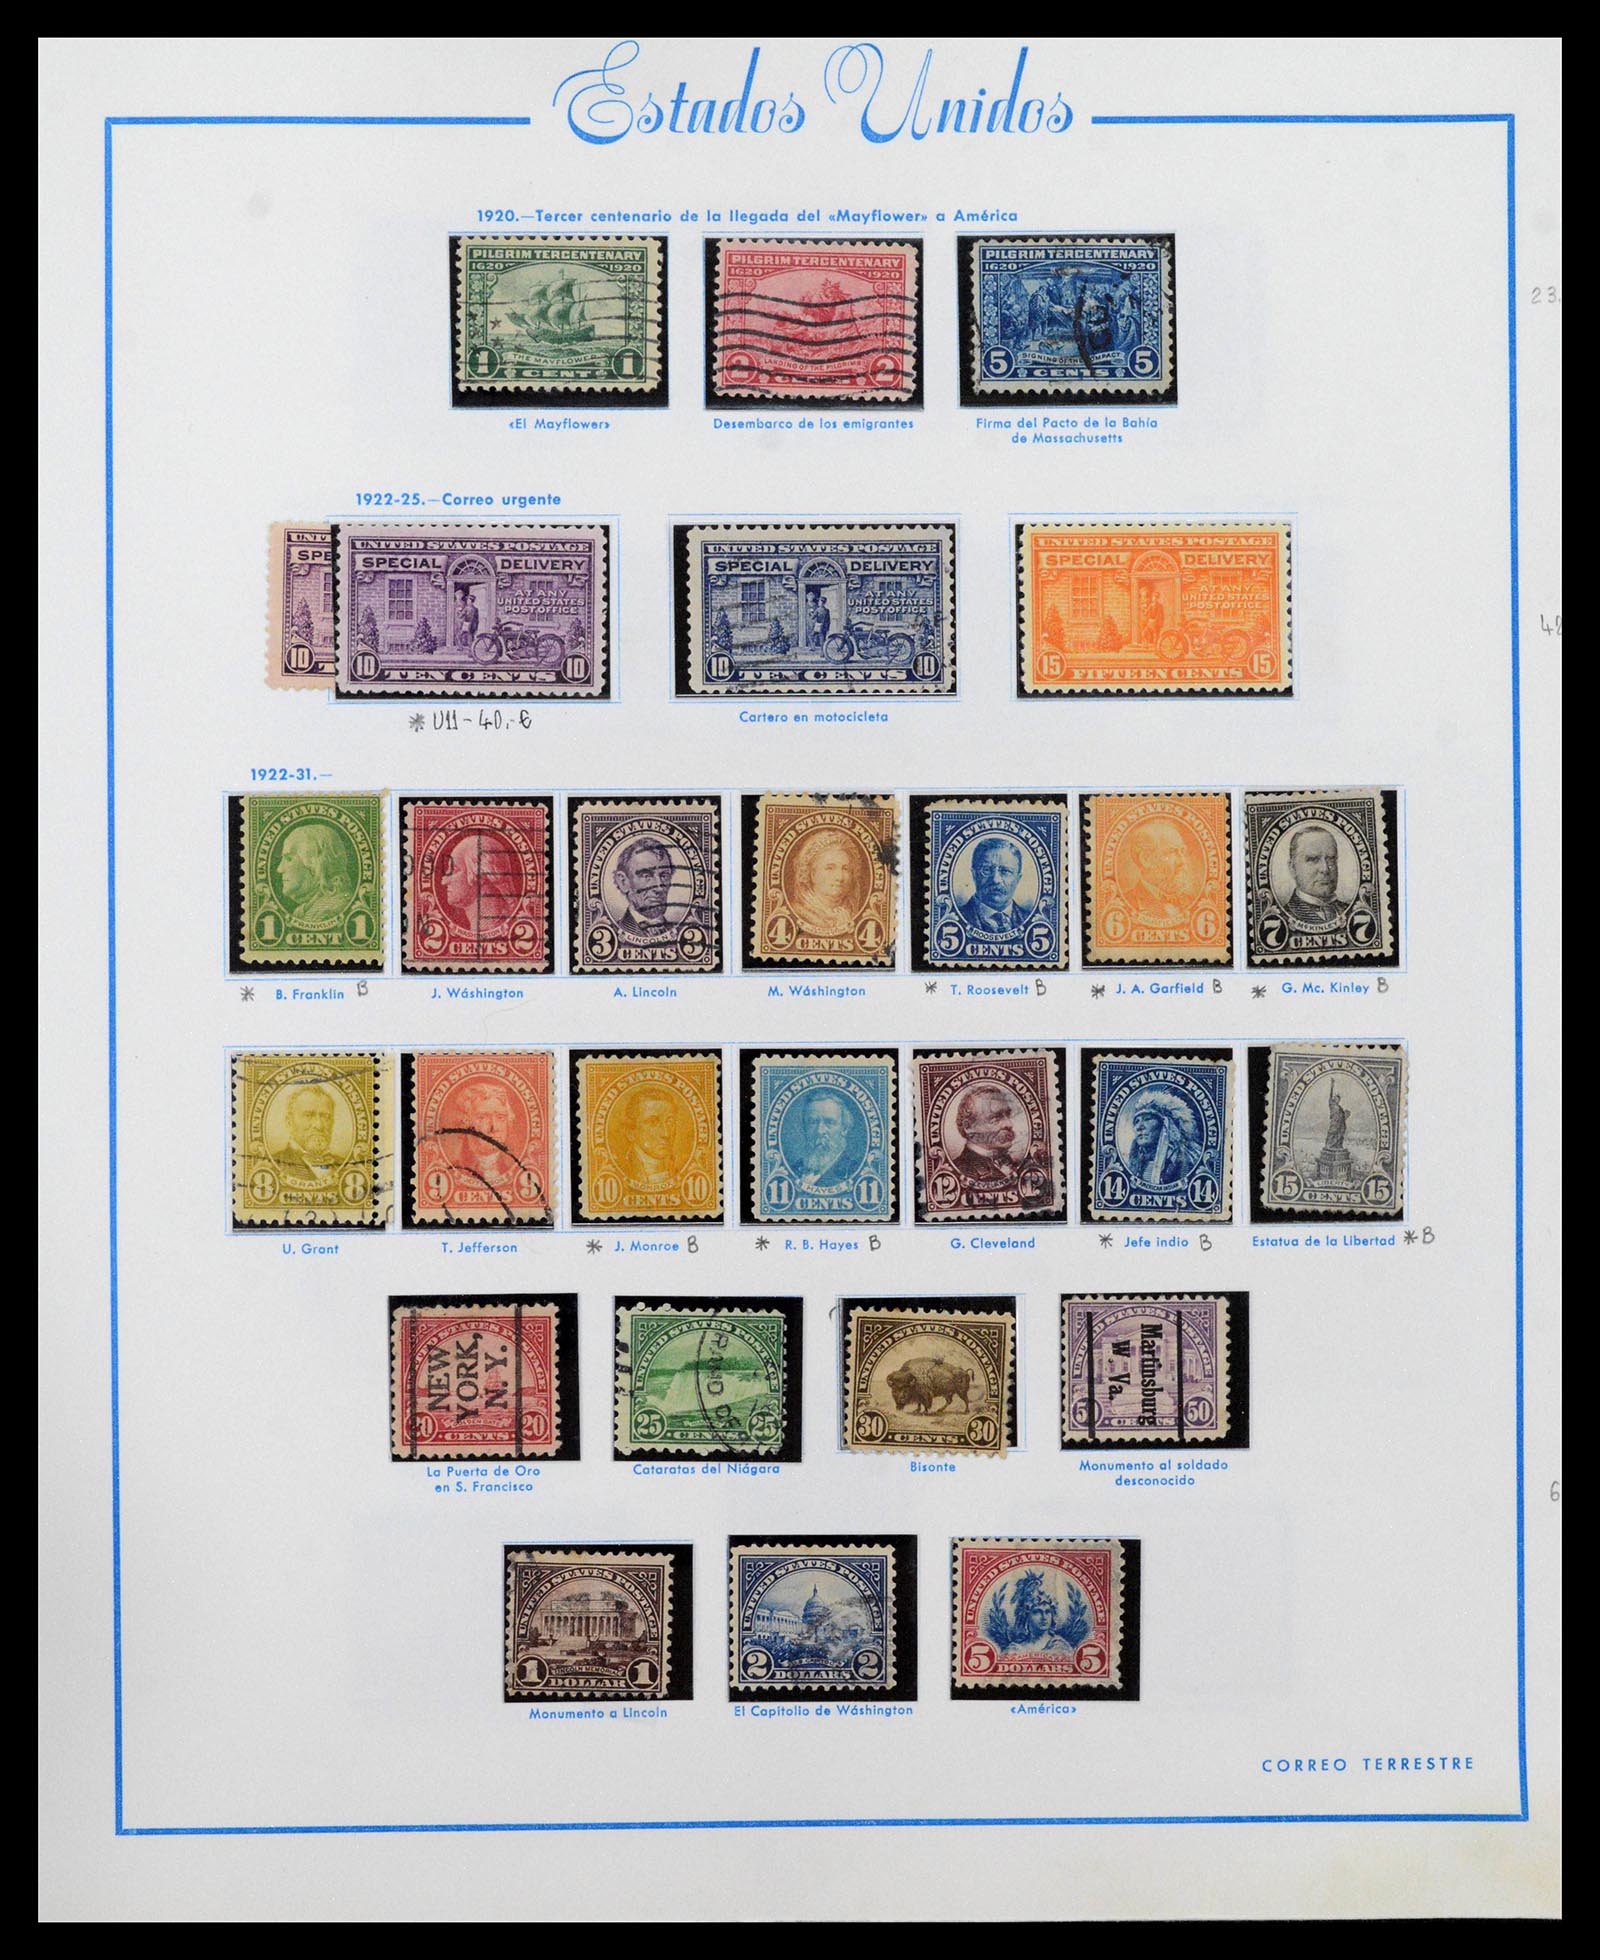 39190 0013 - Stamp collection 39190 USA 1851-1975.